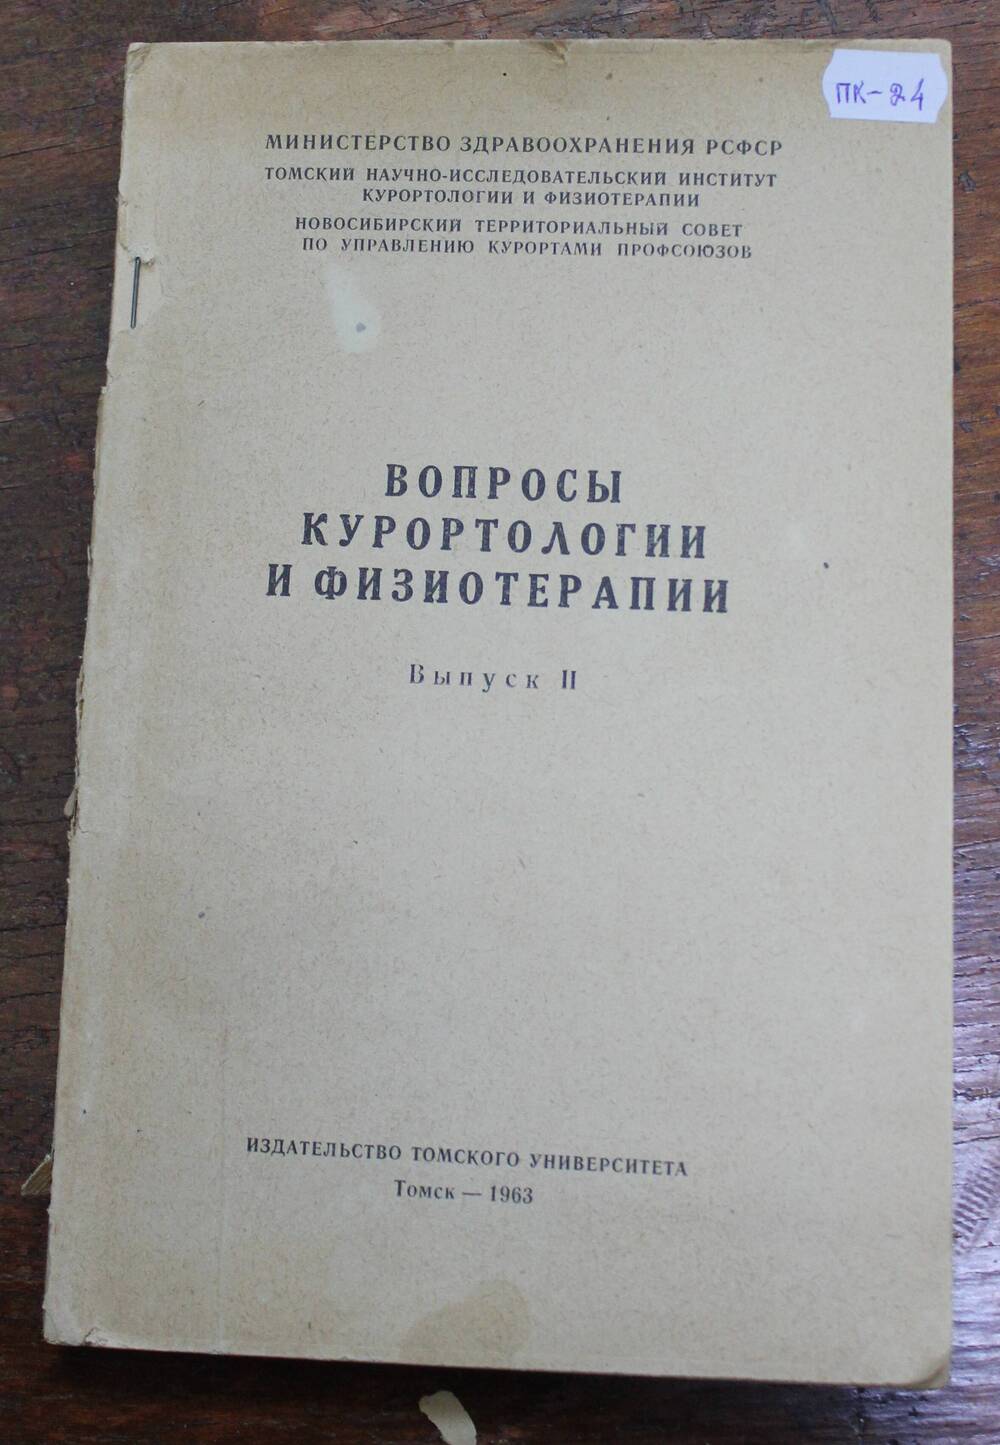 Книга Вопросы курортологии и физиотерапии, выпуск II, г. Томск, 1963г.